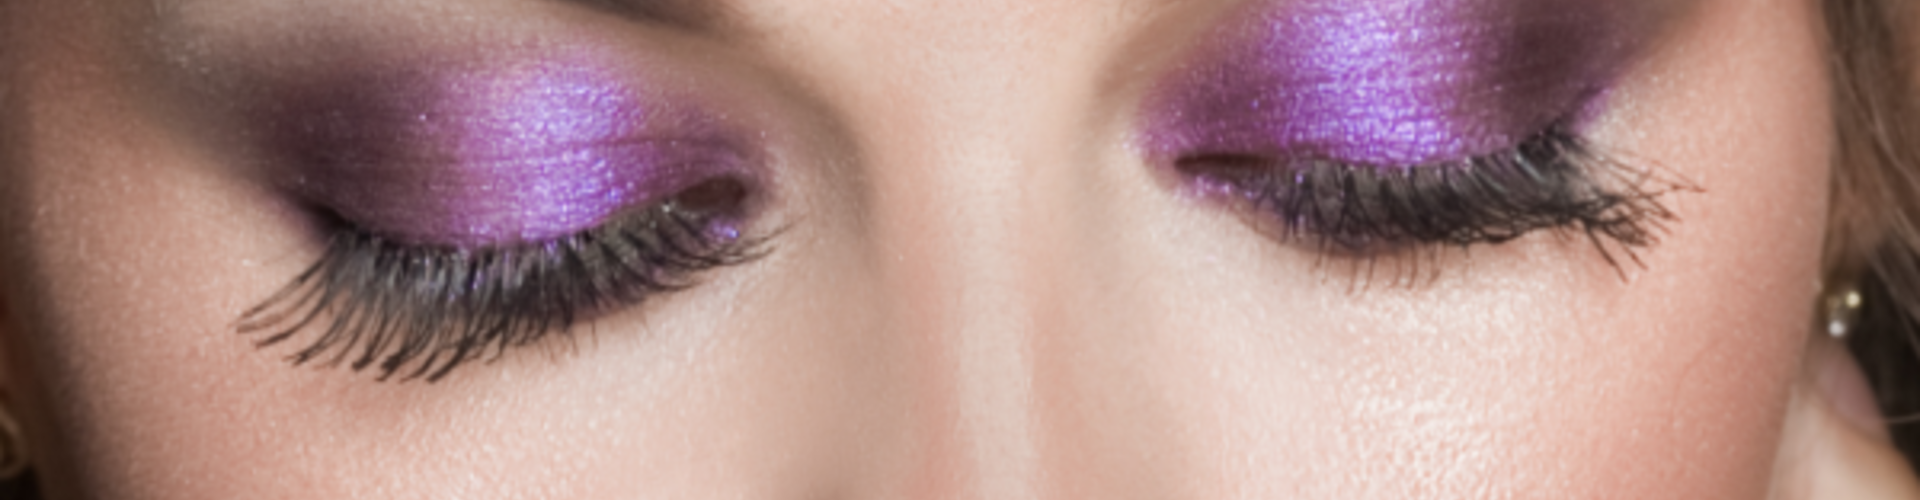 Tutorial de sombra de ojos púrpura